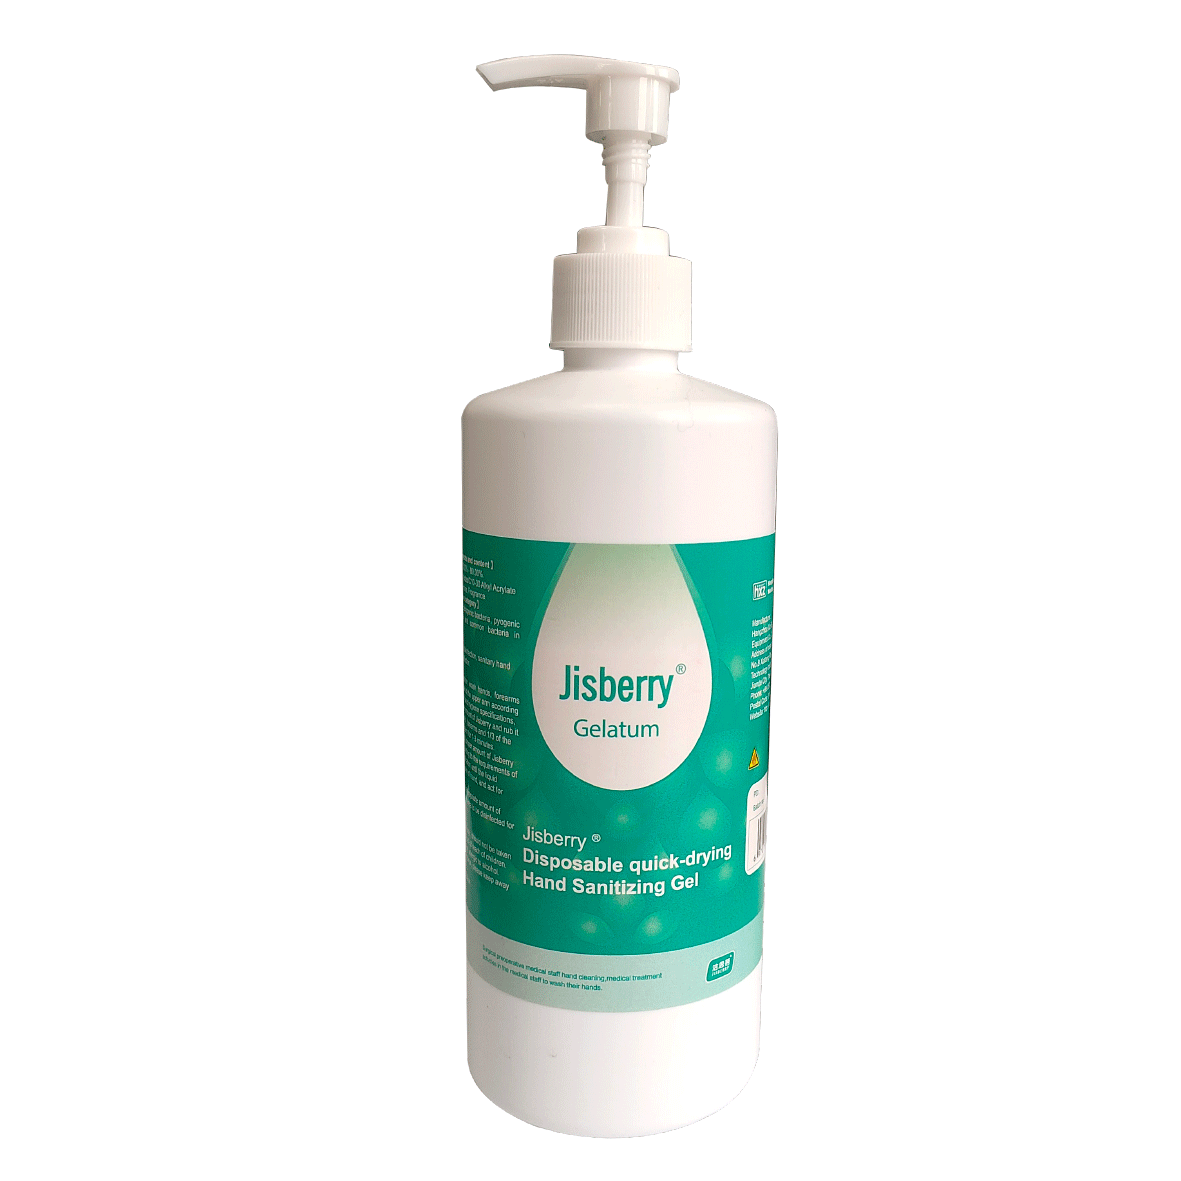 Jisberry® Disposabie Quick-drying Hand Sanitizing Gel